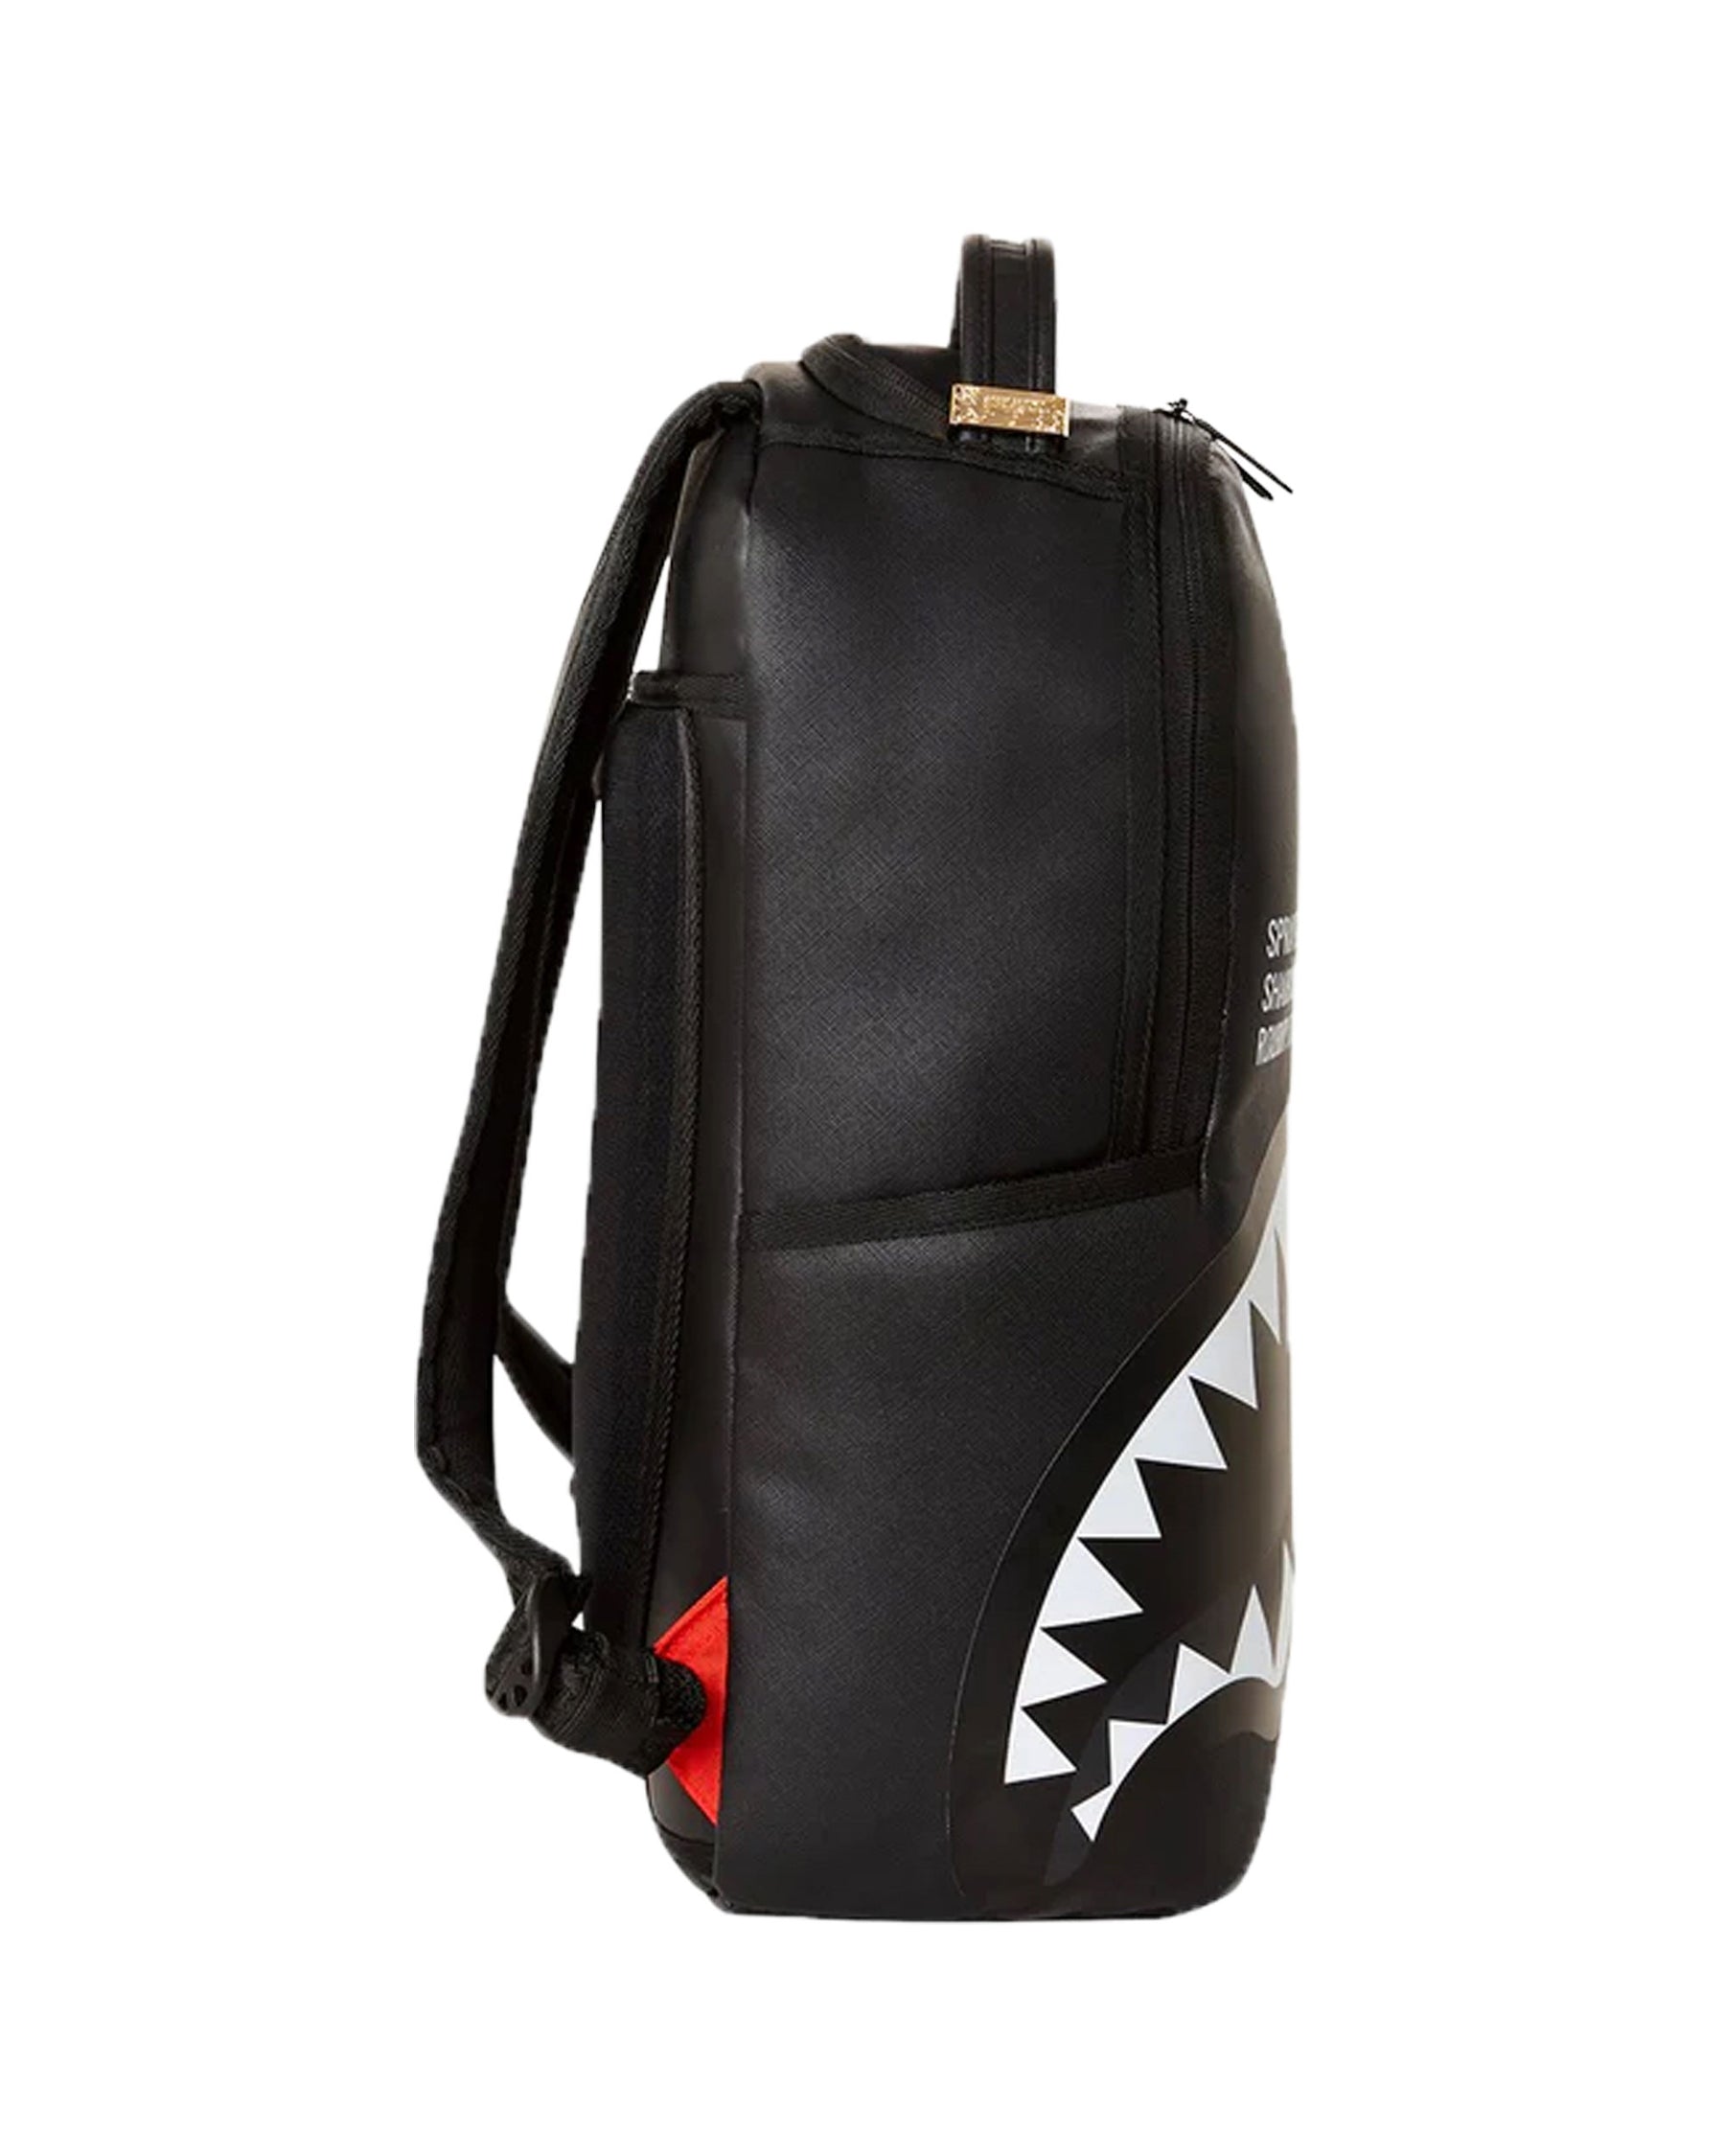 Sprayground Shark Central 2.0 Black On Grey Sp Dlxsv Backpack